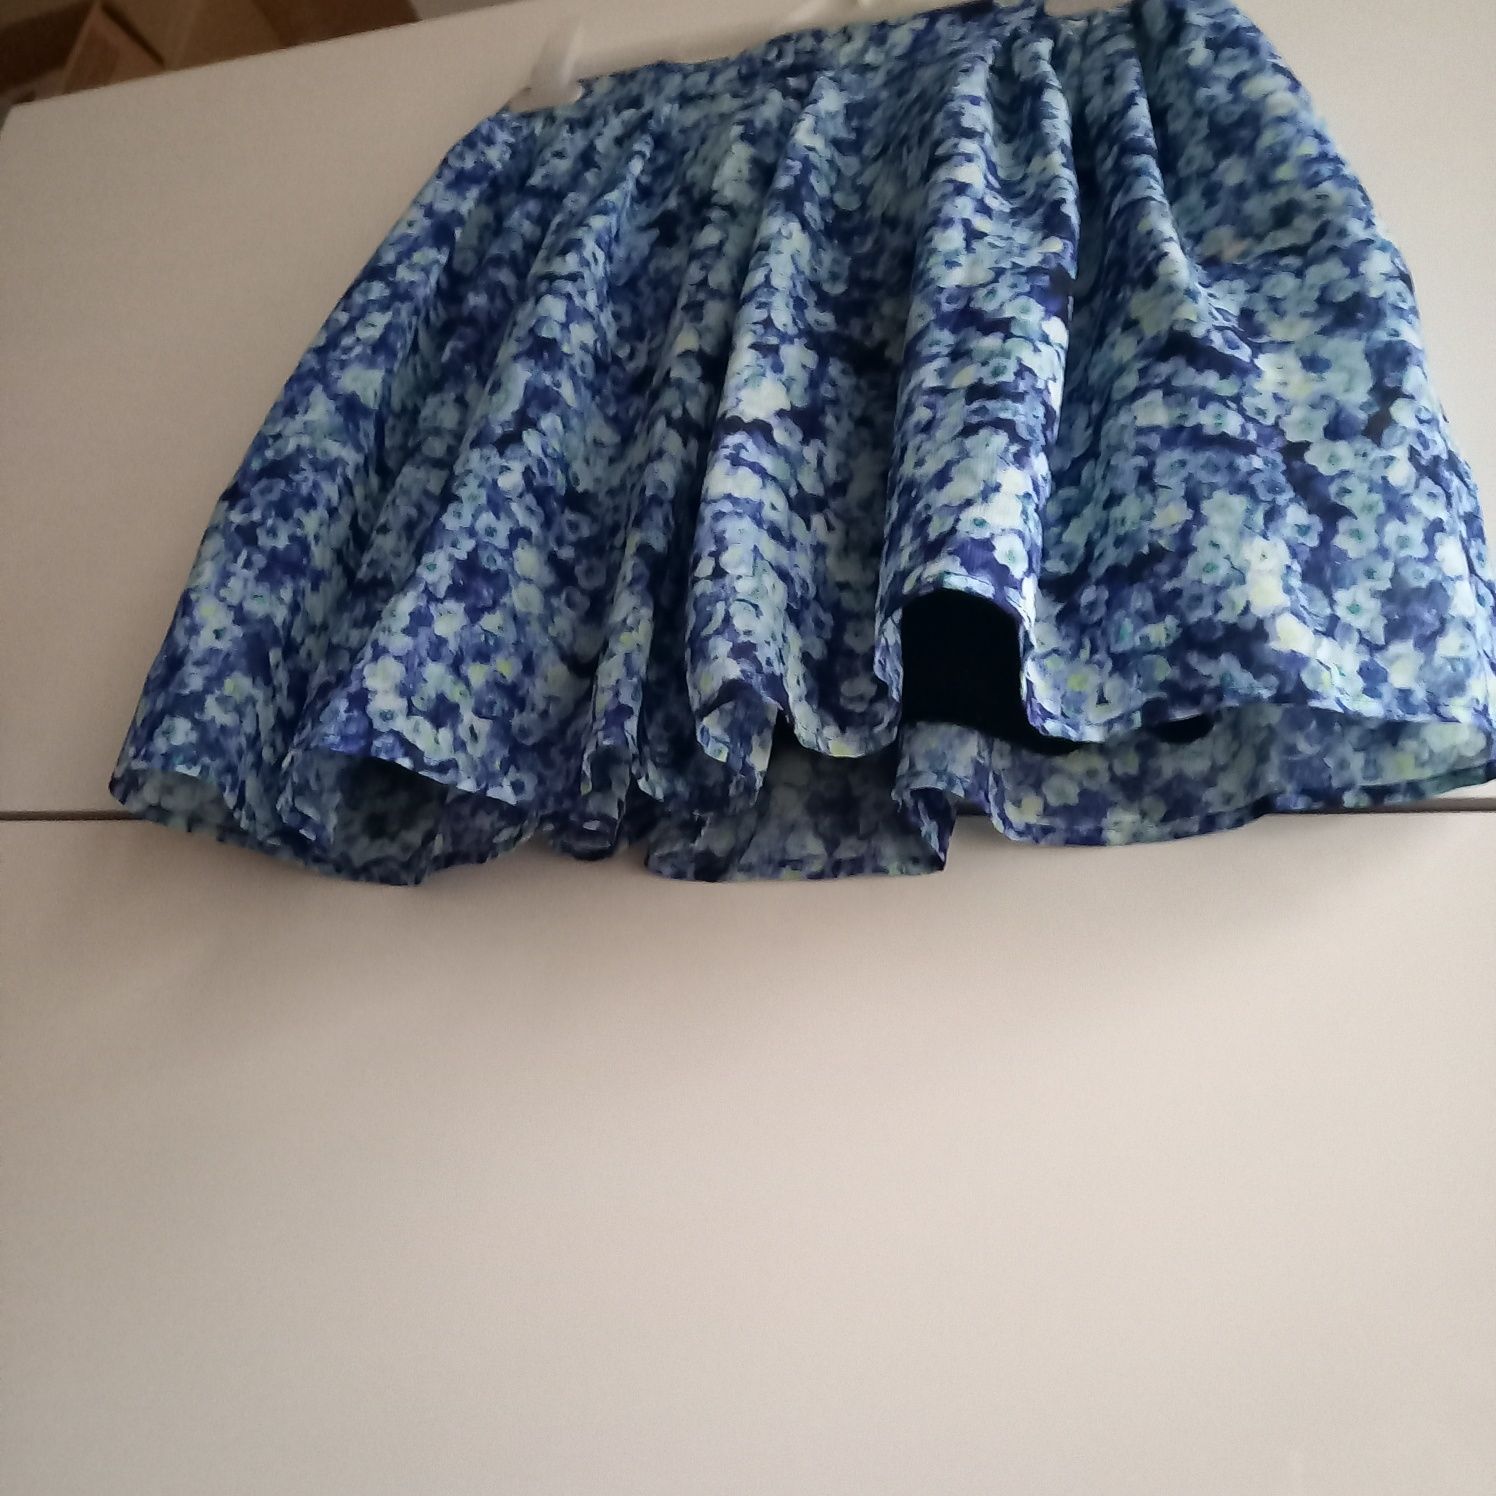 Śliczna spódnica tiulowa Bik Bok niebieska krótka w kwiaty jak Monet